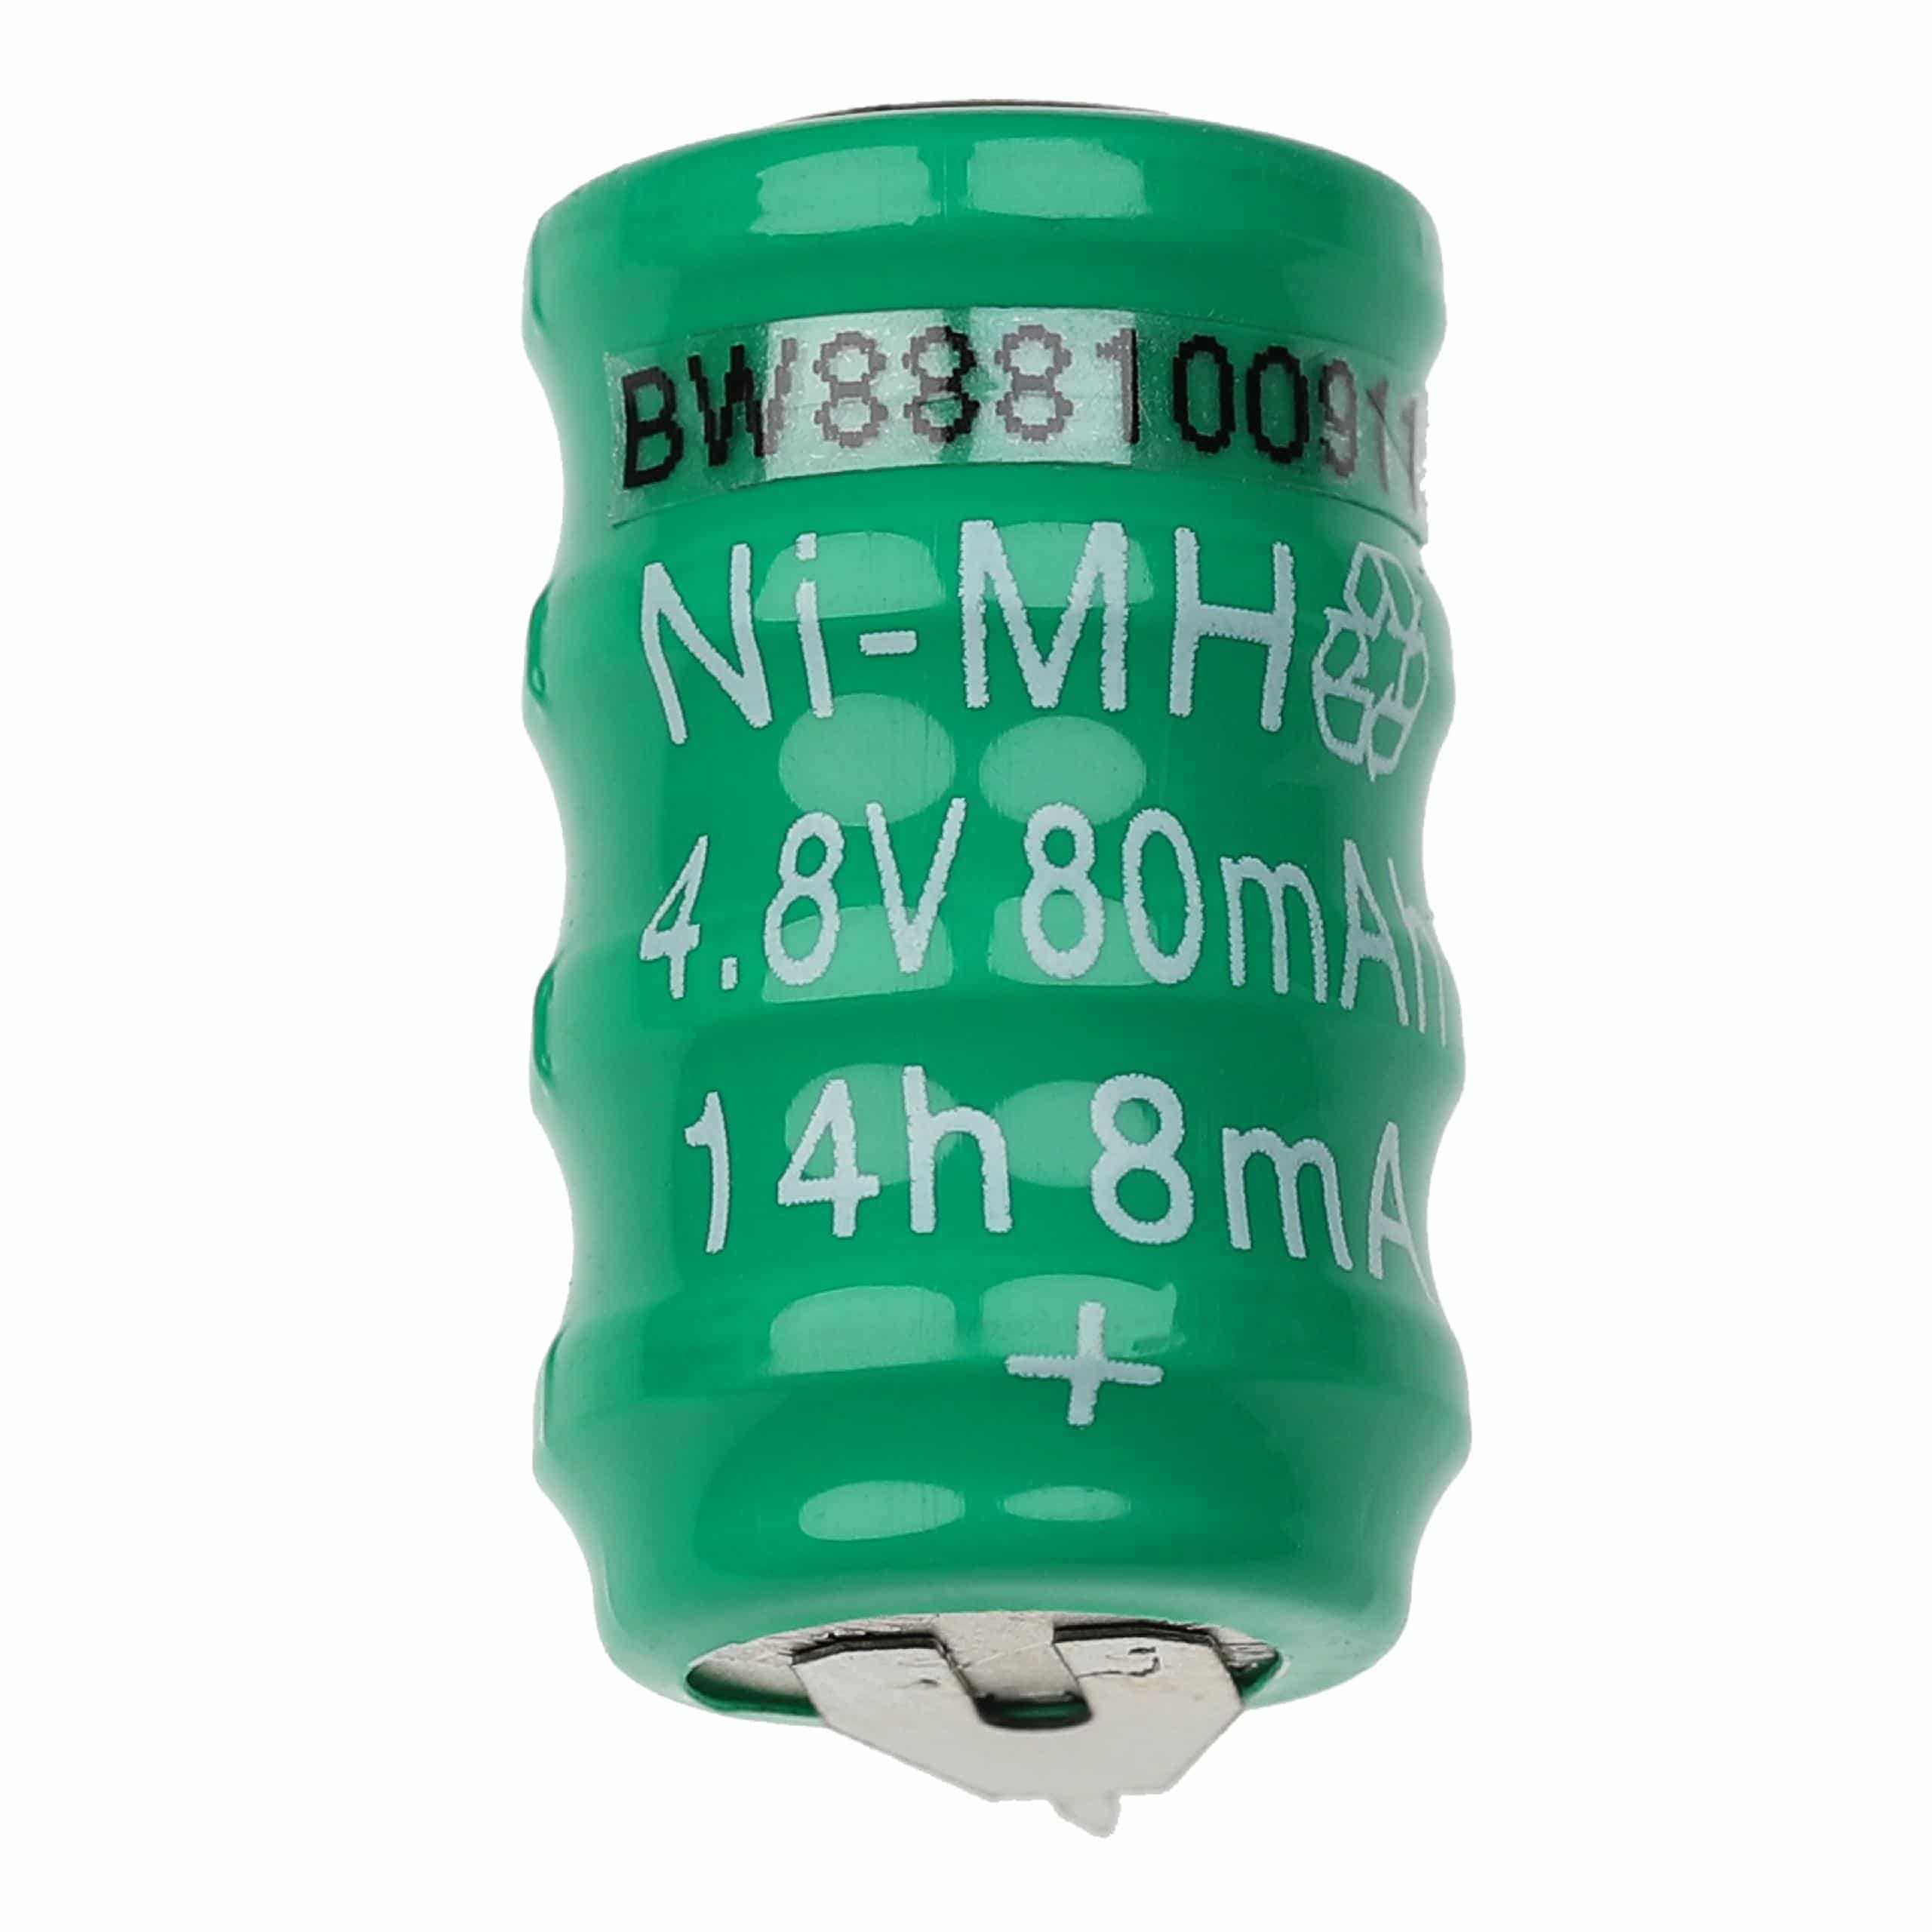 Batteria a bottone (4x cella) tipo V80H 2 pin sostituisce V80H per modellismo, luci solari ecc. 